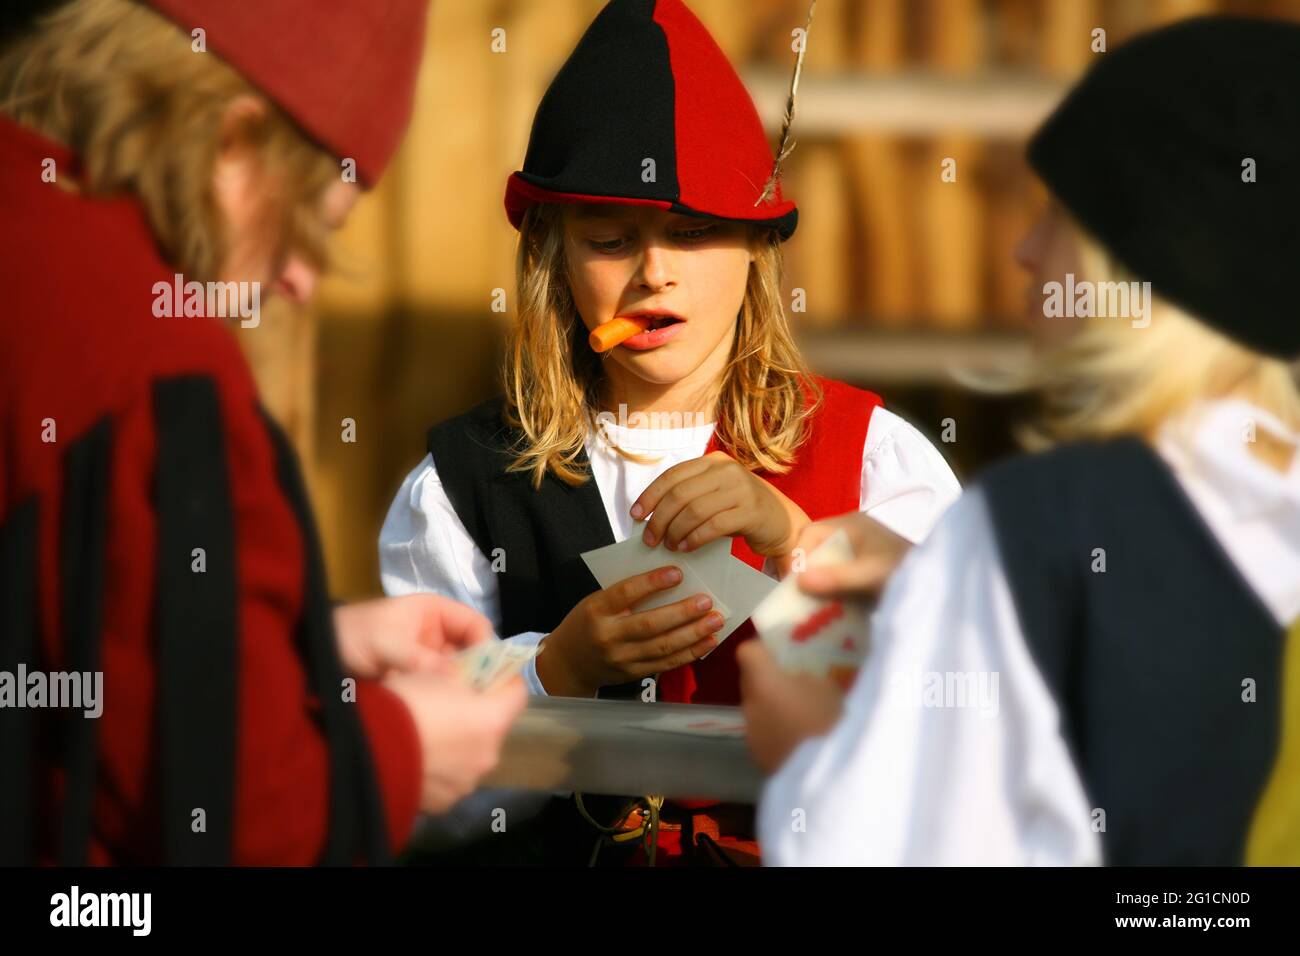 Landshuter Hochzeit oder Landshuter Fürstenhochzeit ist das größte Mittelalterfest Europas! Kinder spielen Karten. Stockfoto